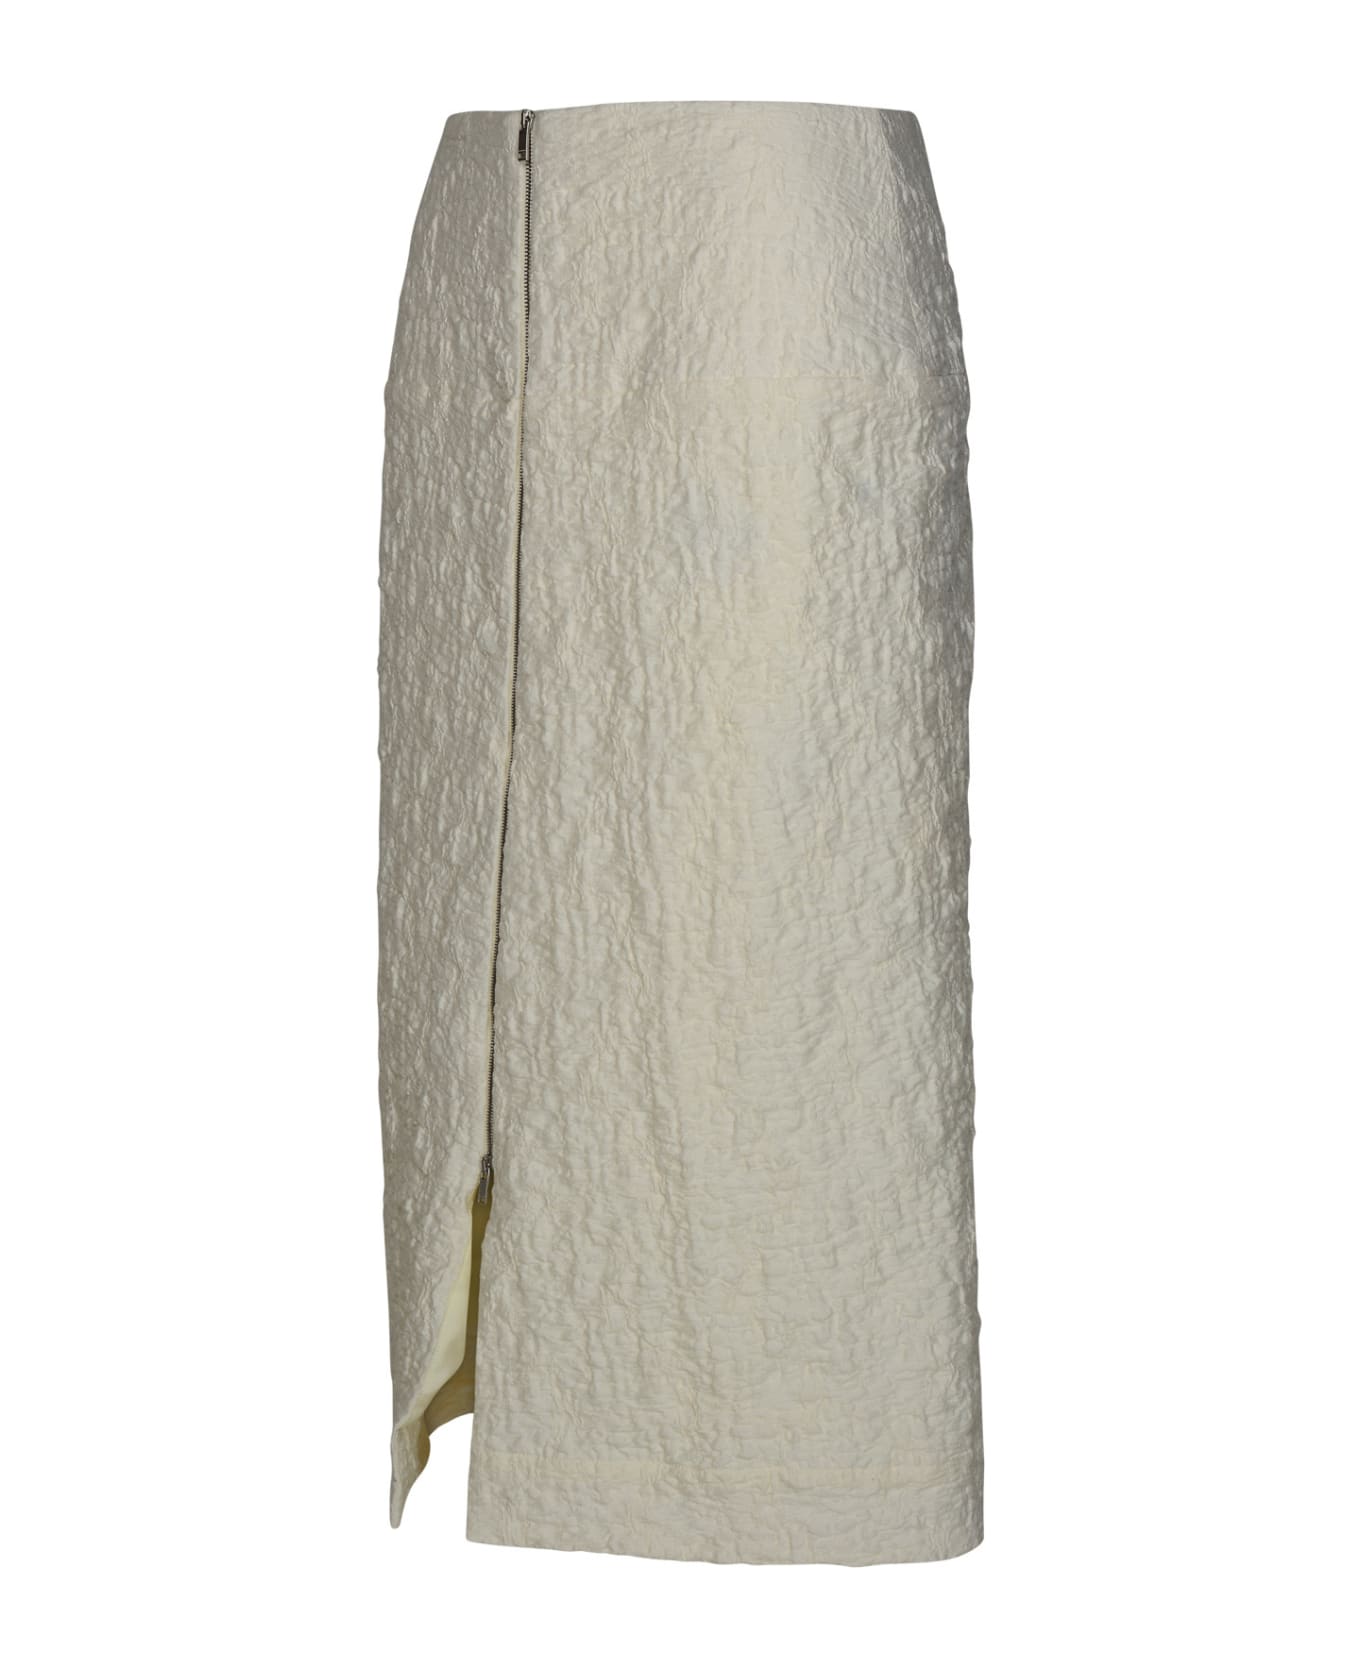 Jil Sander White Cotton Blend Skirt